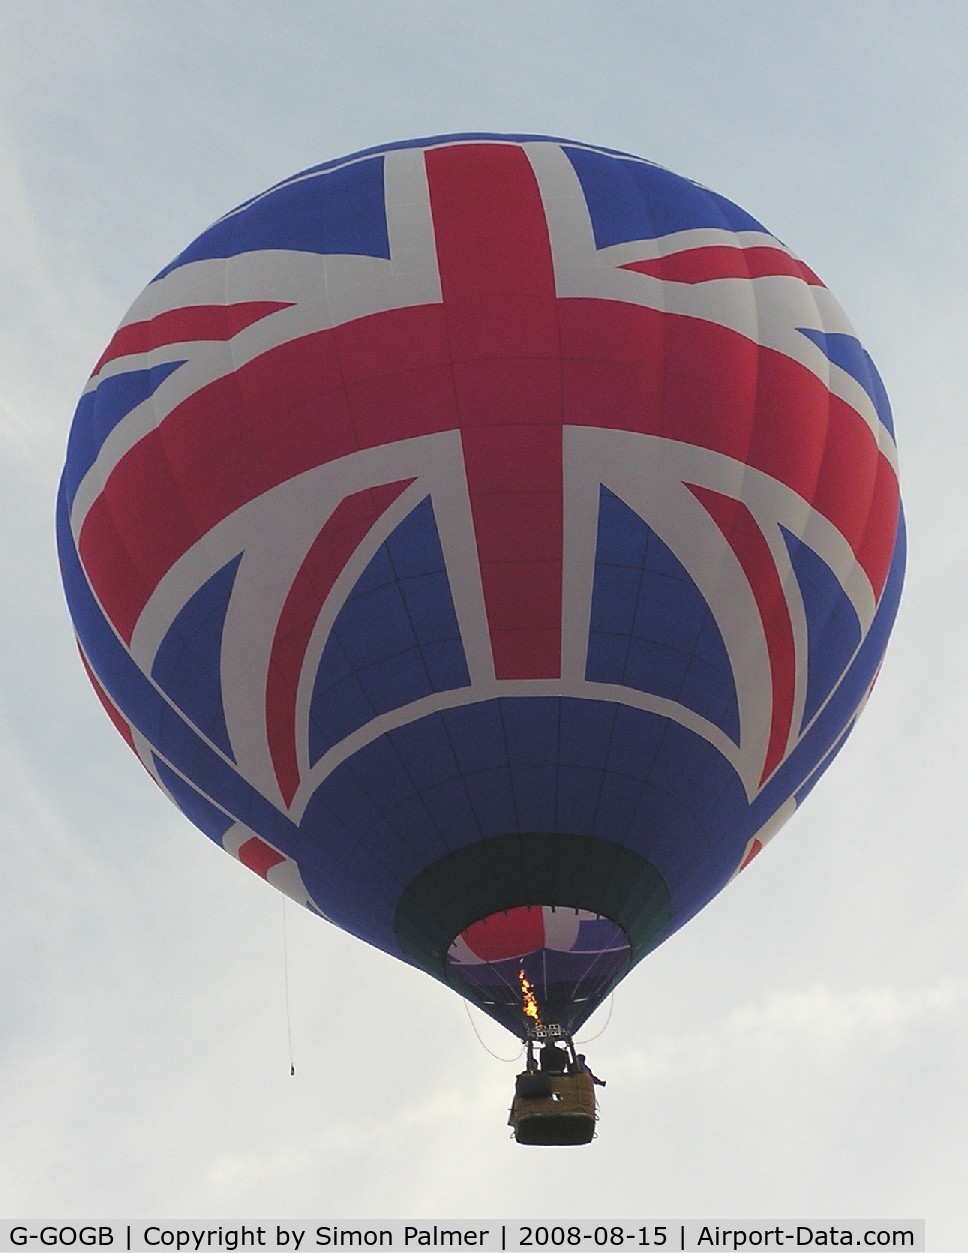 G-GOGB, 2004 Lindstrand LBL 90A C/N 1011, Team GB hot-air balloon at Northampton Racecourse